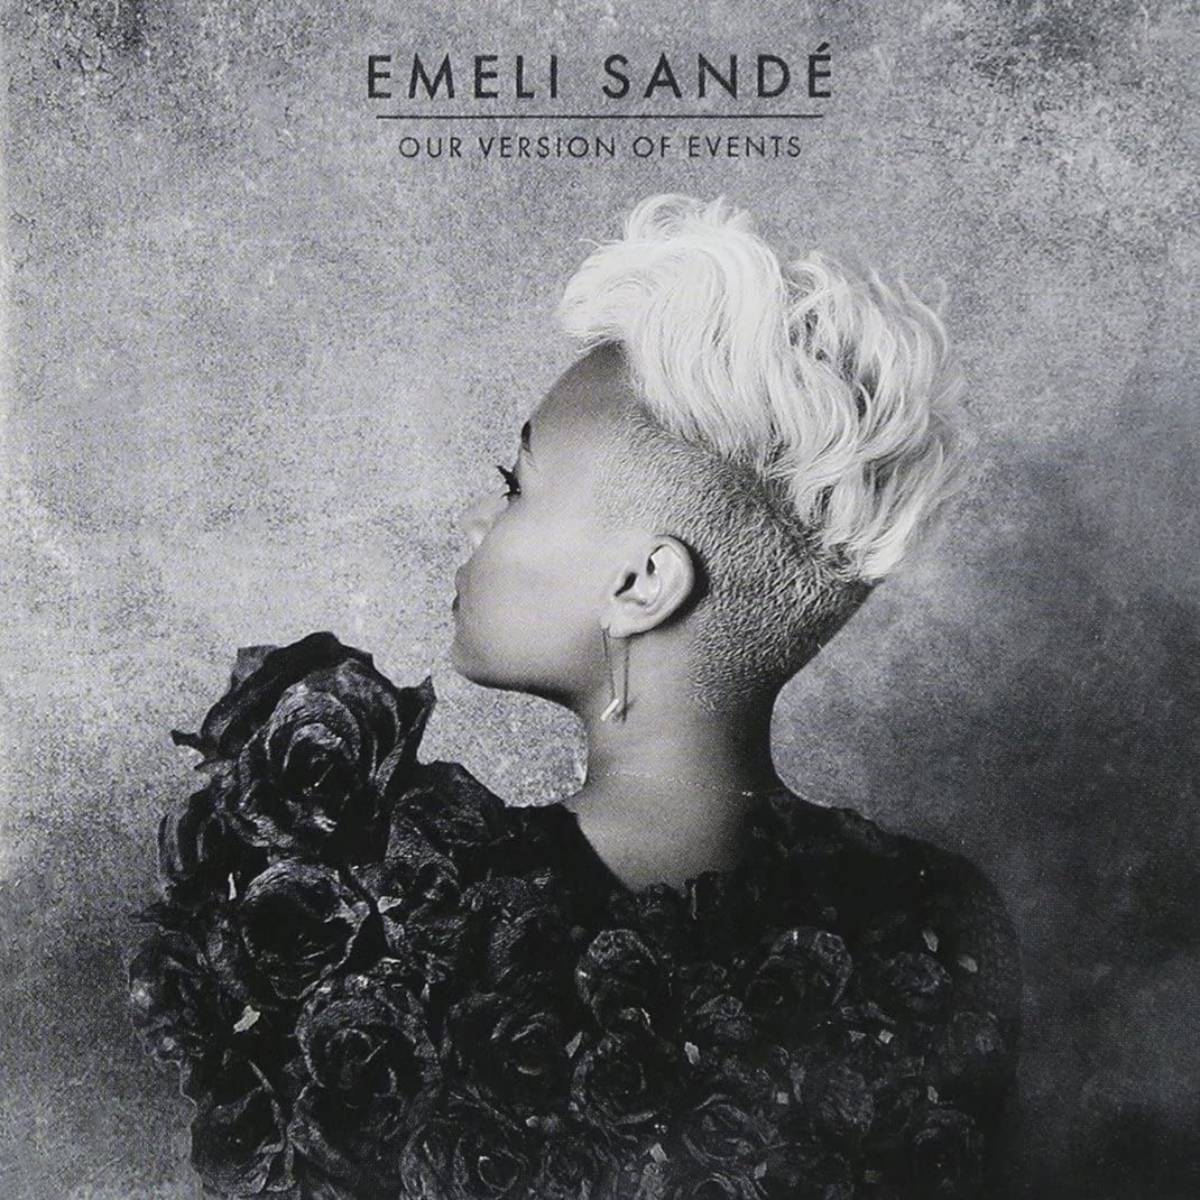 Our Version Of Events est un début réussi pour la chanteuse écossaise Emeli Sandé (couverture de l'album).